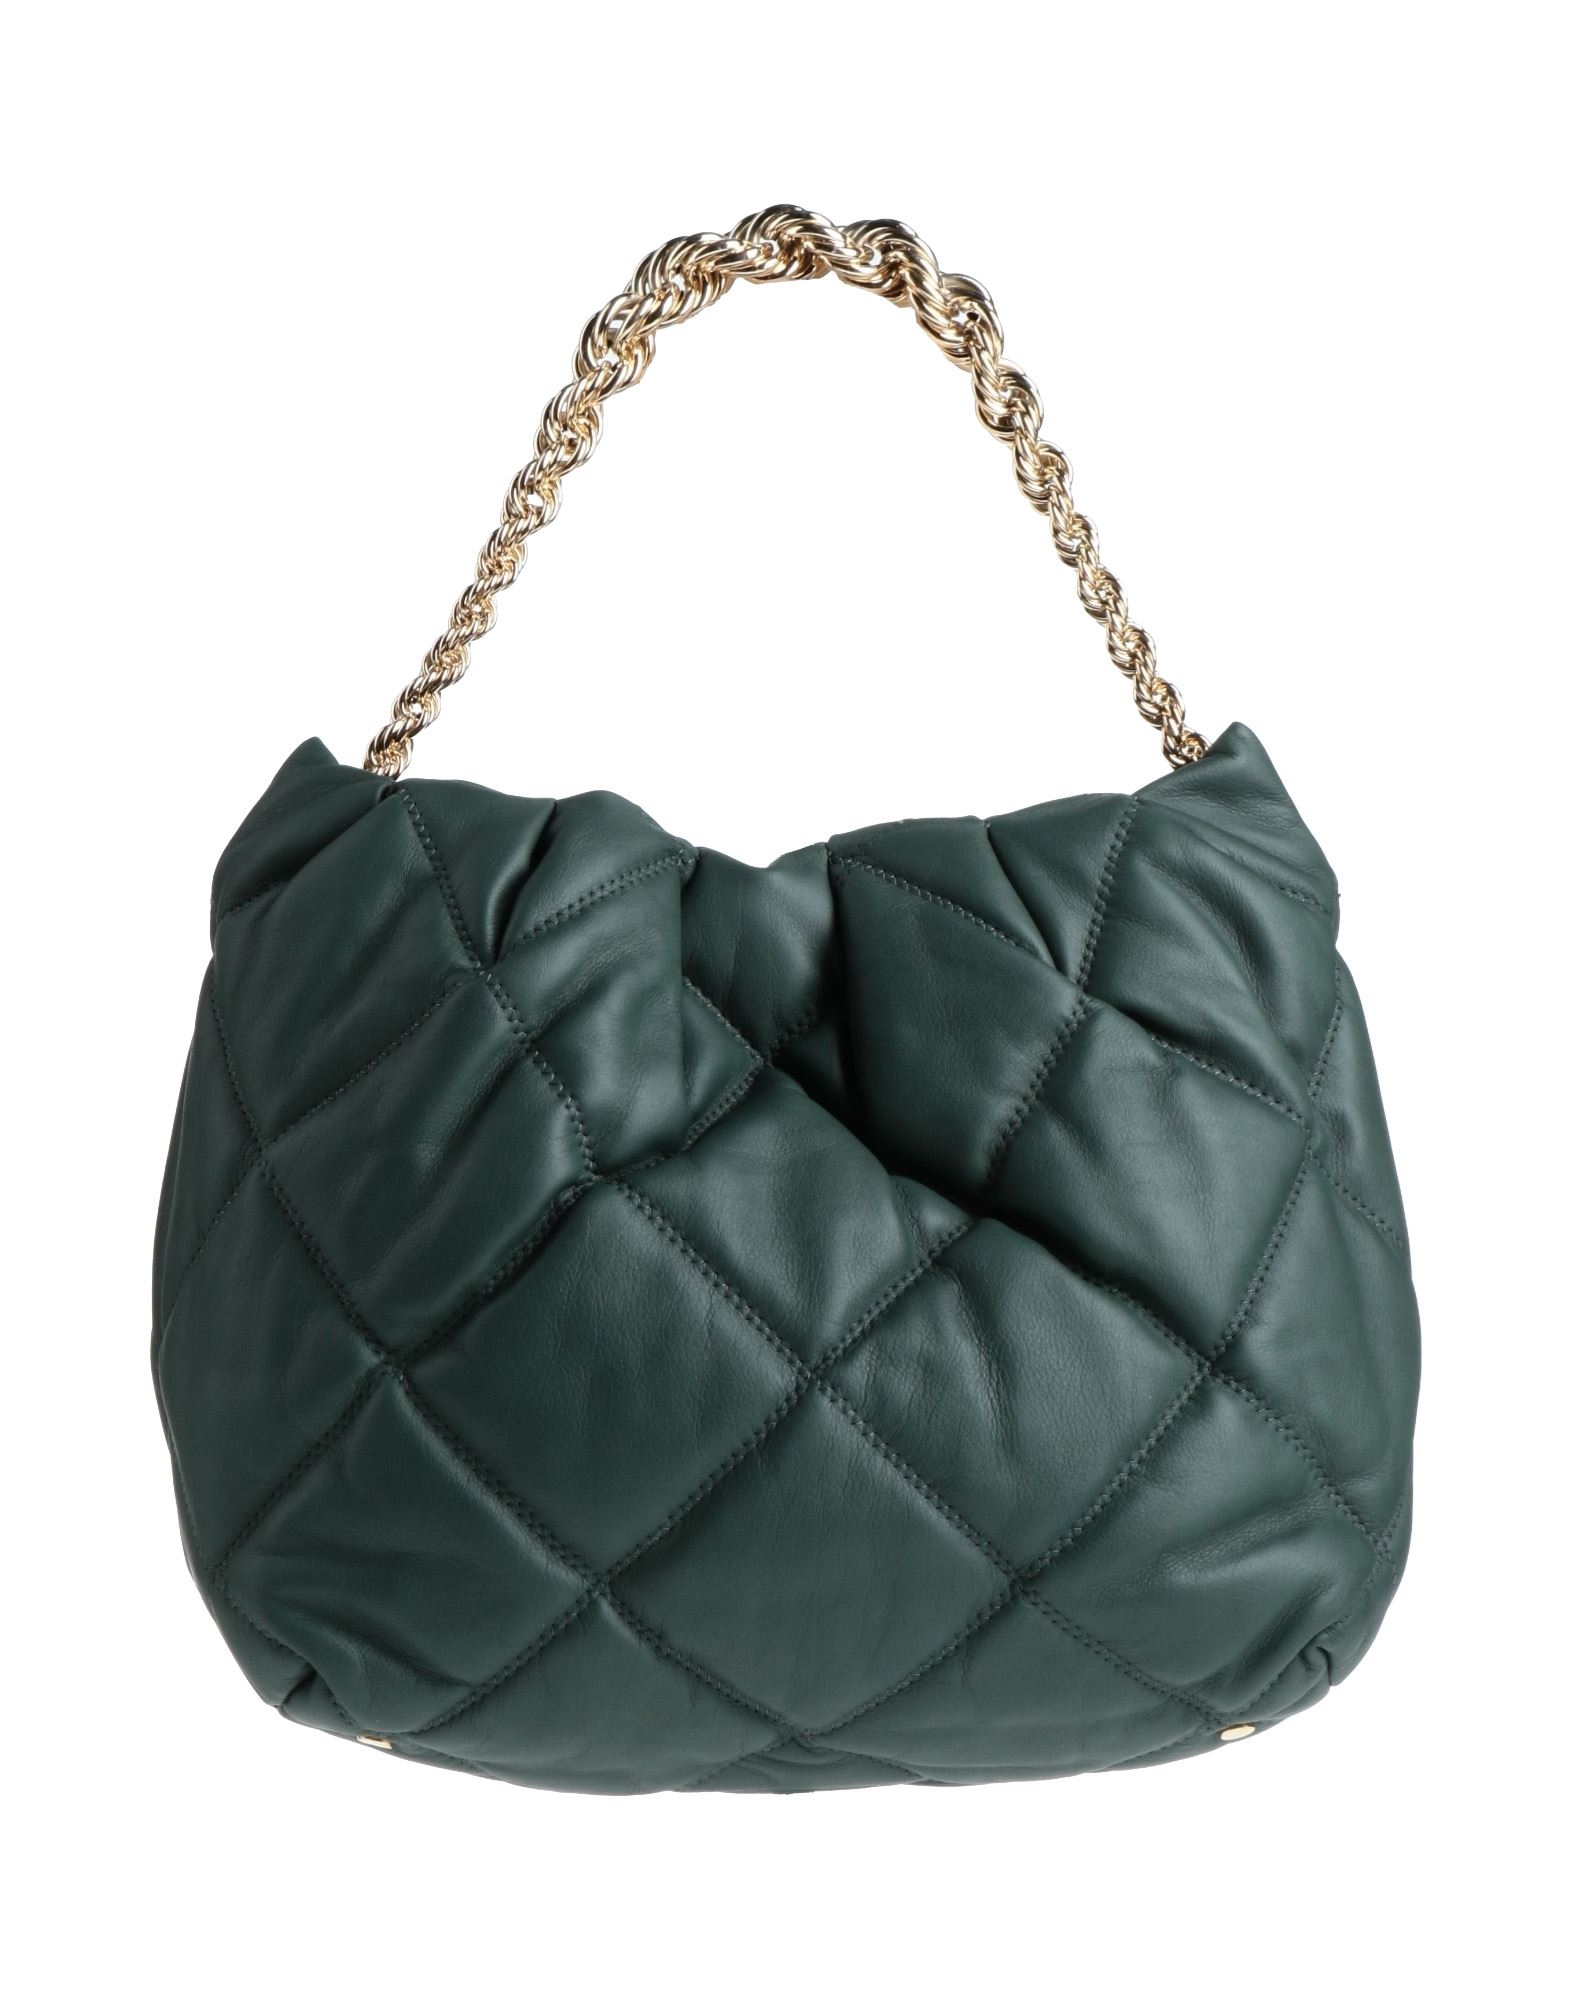 Dorothee Schumacher Handbags In Dark Green